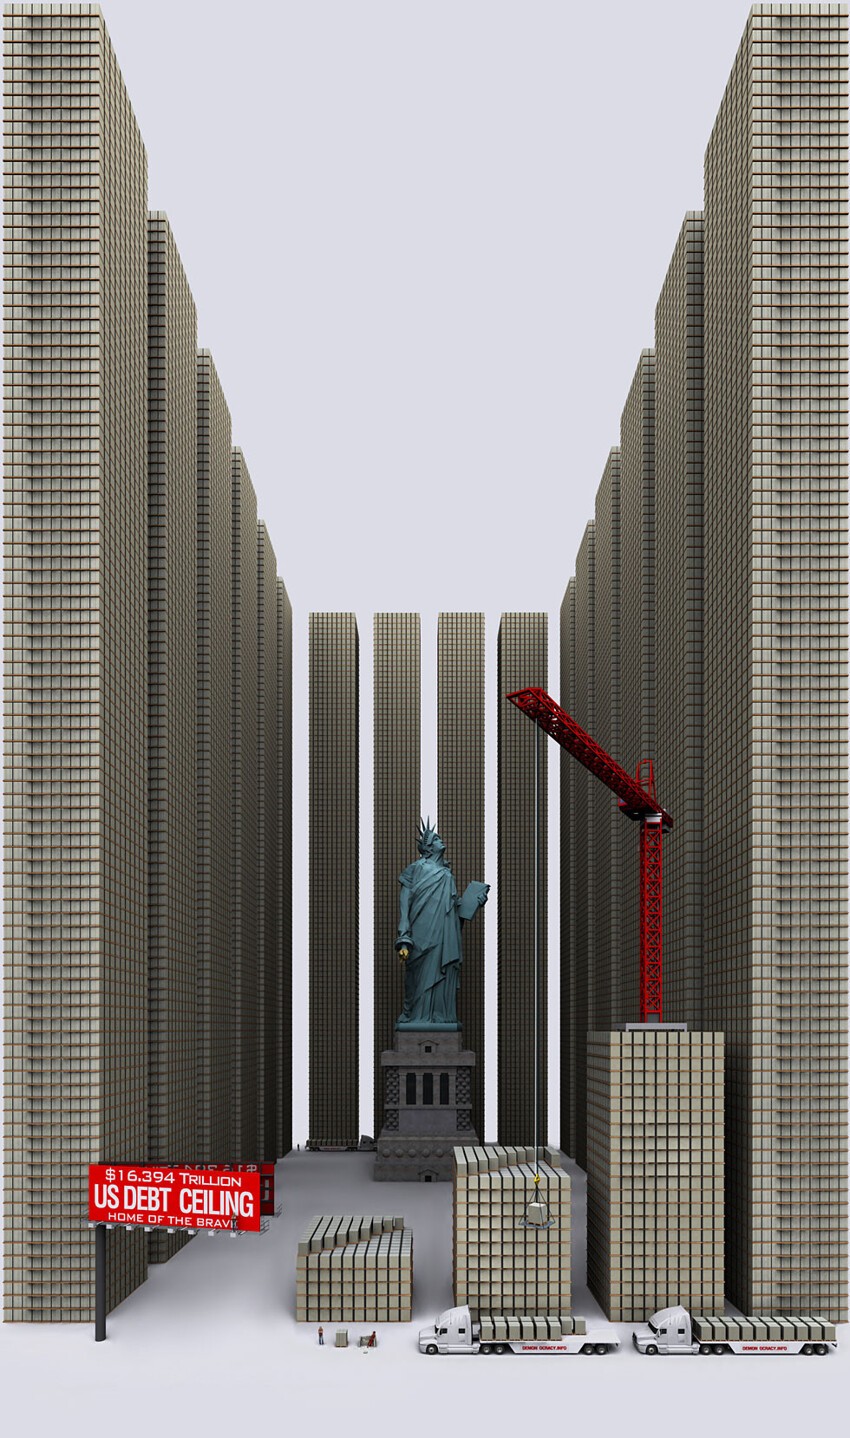 Ну и наконец, государственный долг Соединенных Штатов в компании Статуи Свободы